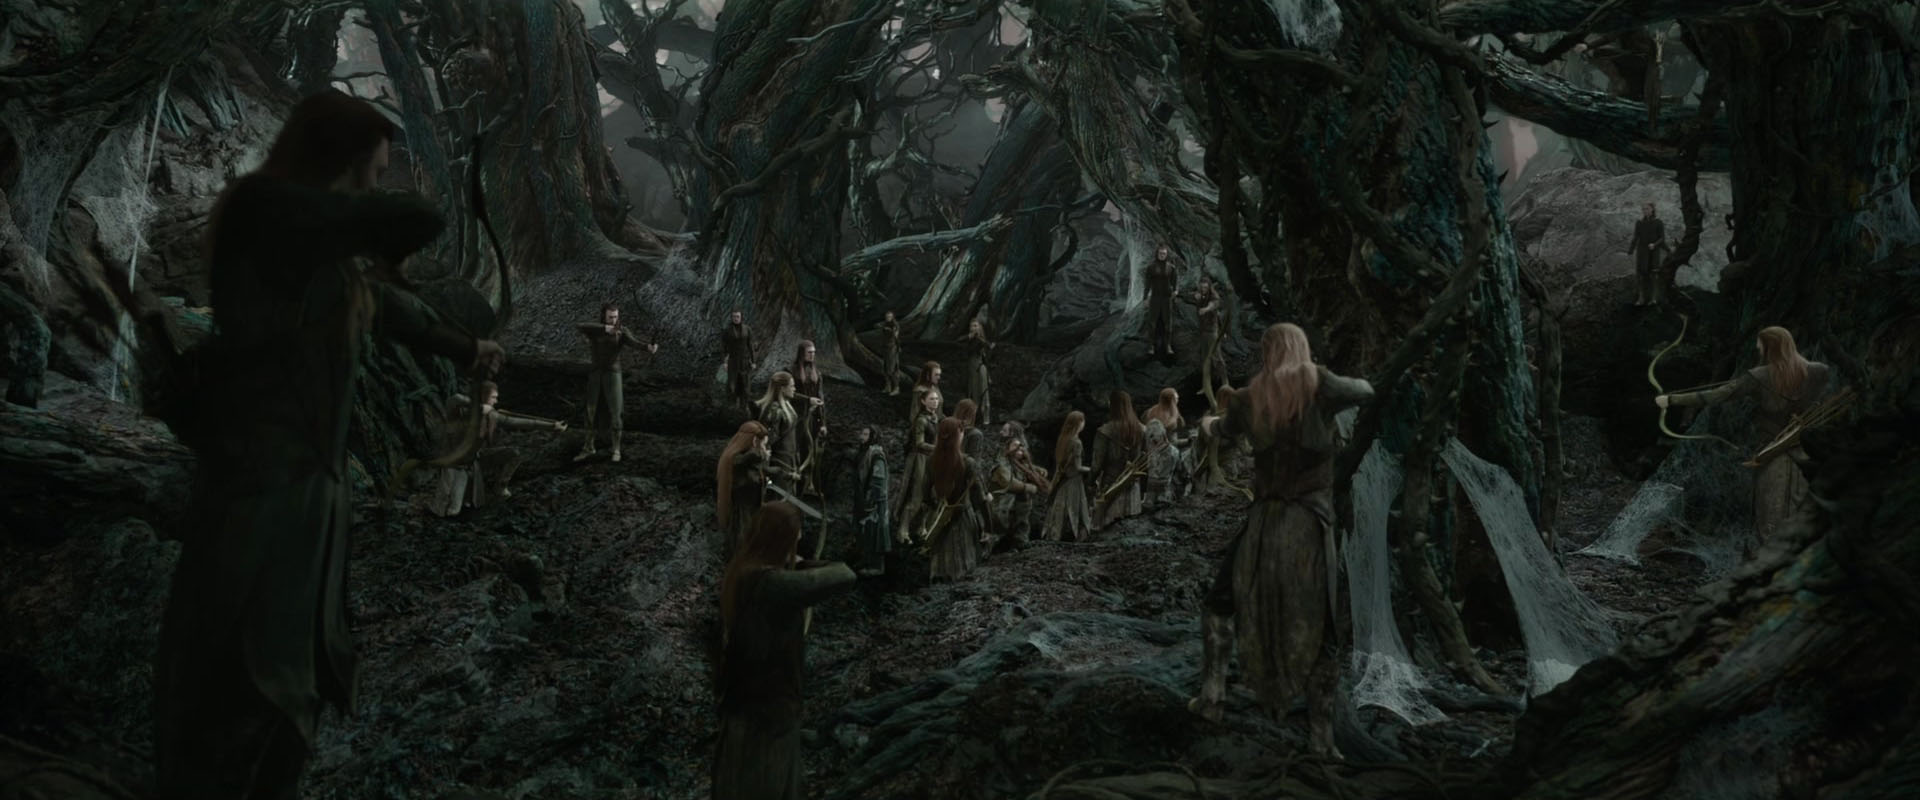 hobbit elves